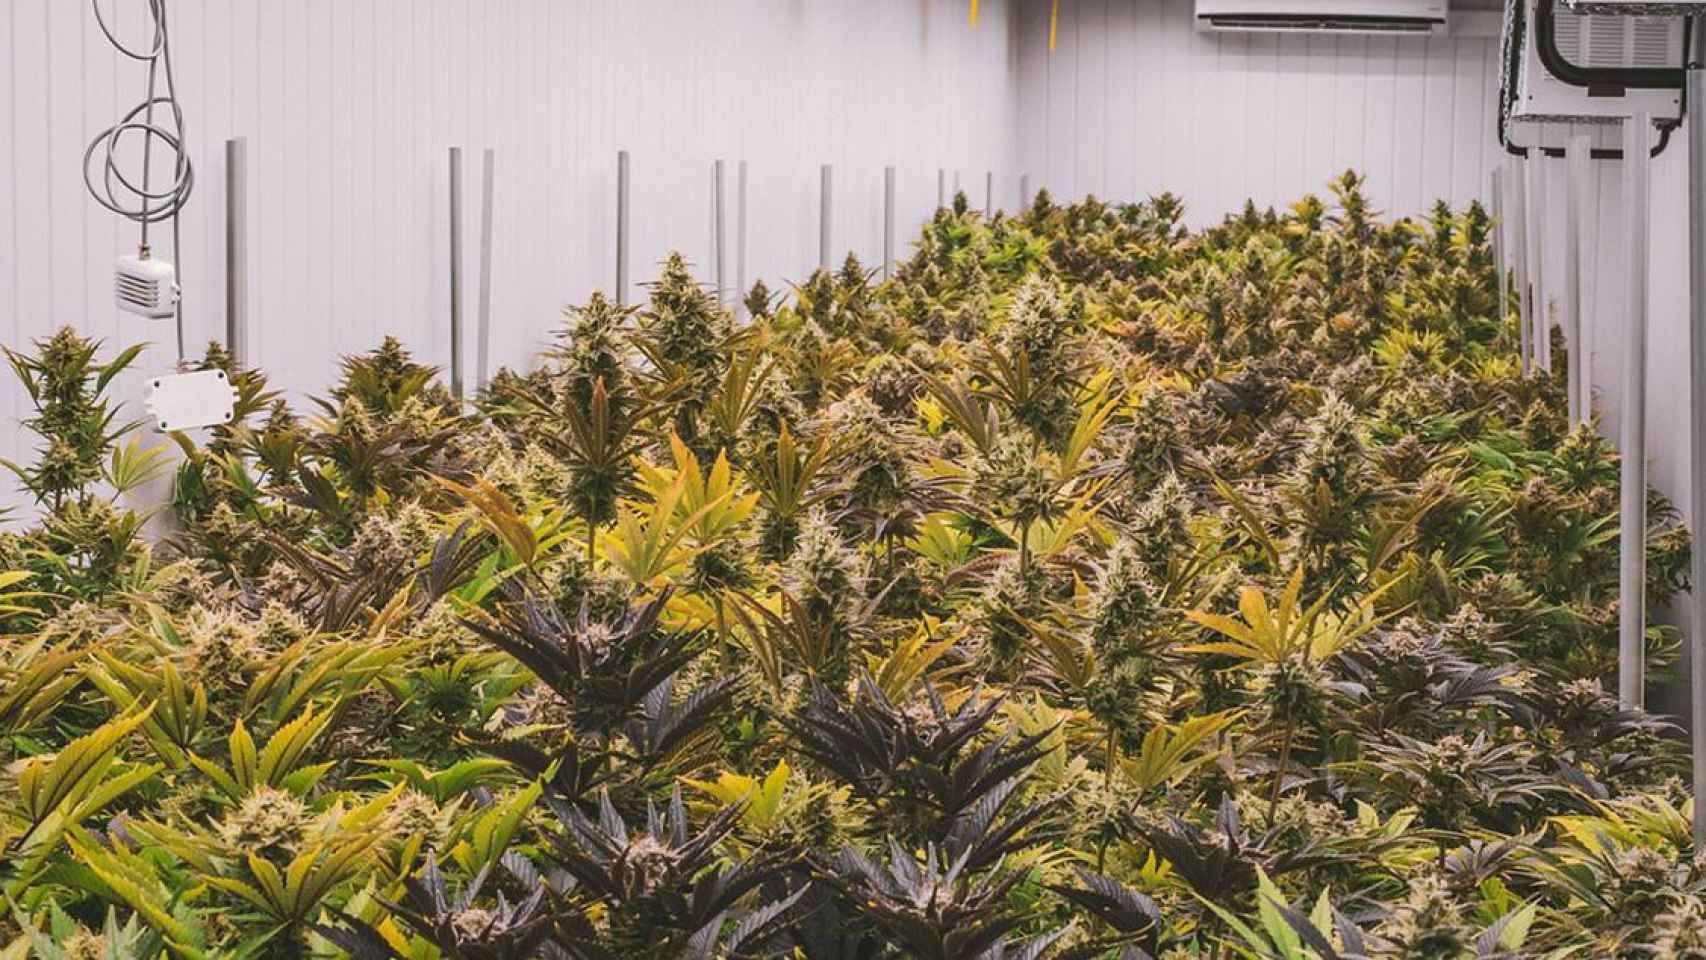 Plantas de cannabis, una de las drogas cuyo aumento en el consumo abordará el Congreso Internacional de Socidrogalcohol / PIXABAY